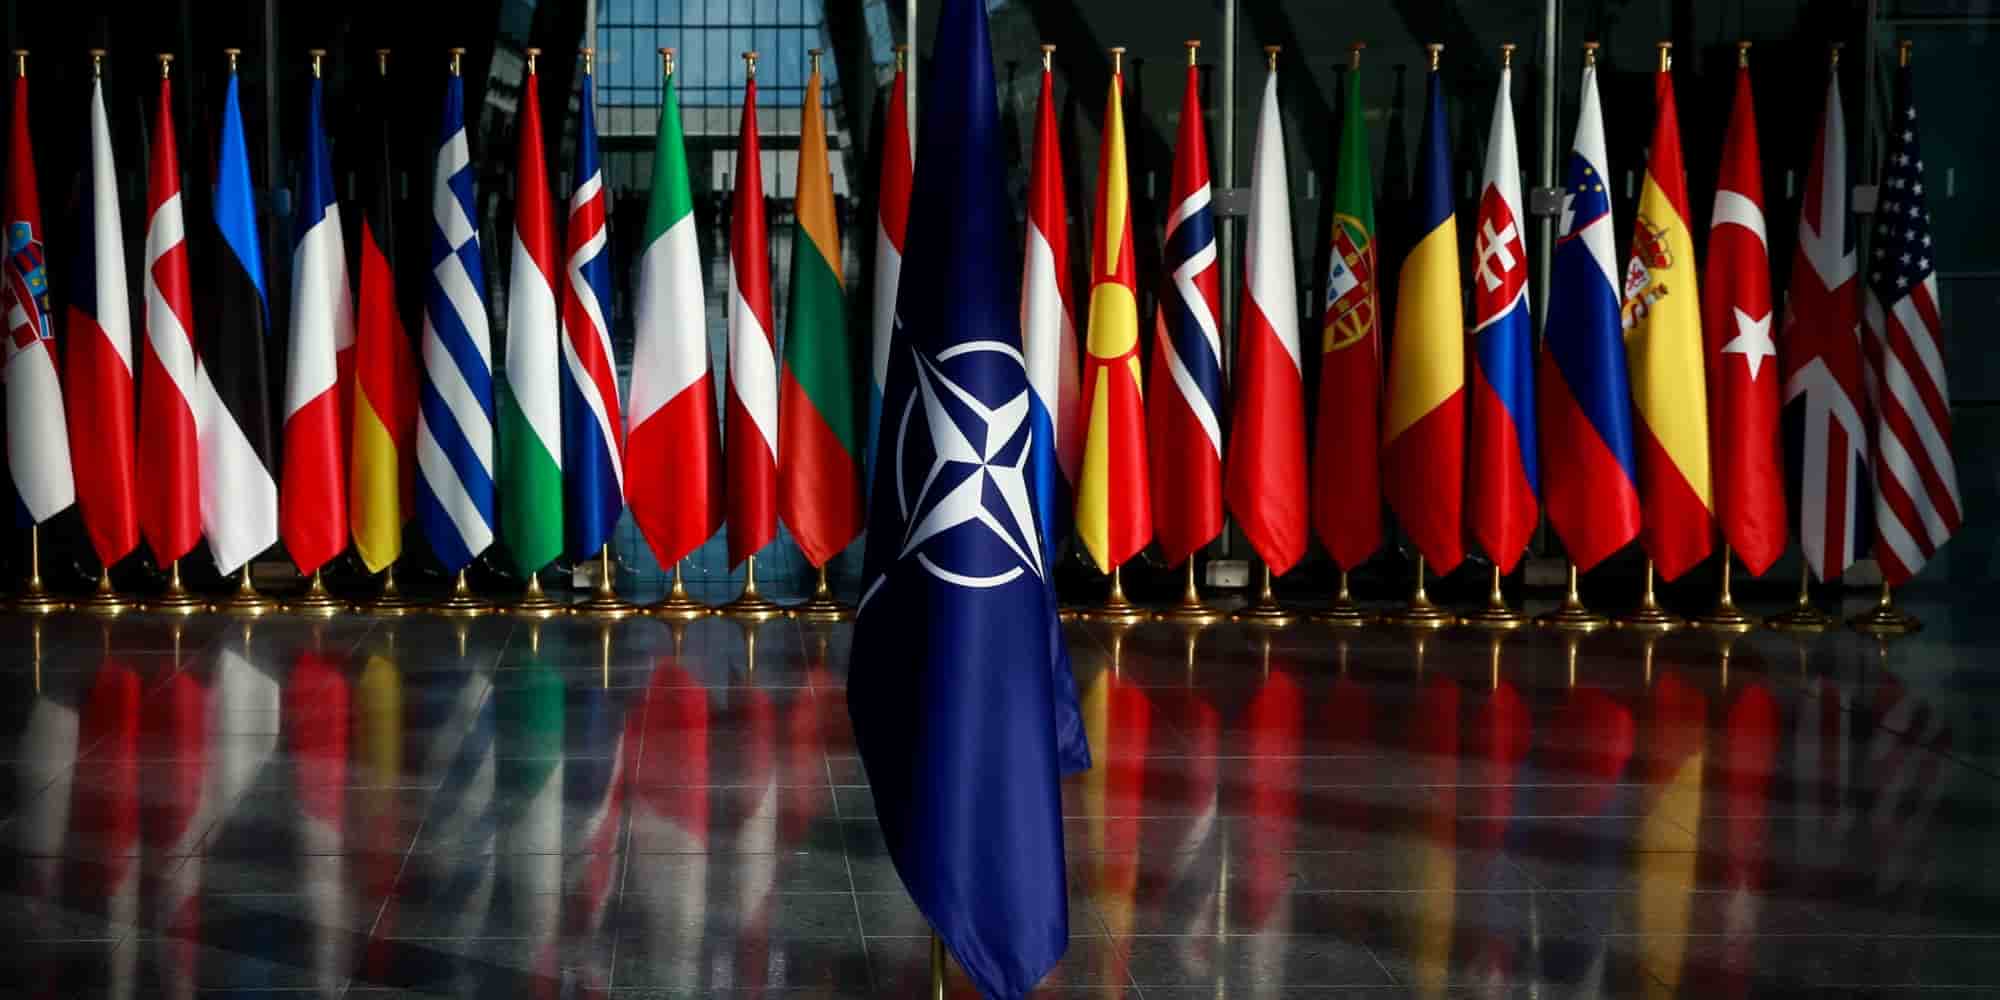 Σημαία του NATO μπροστά από τις σημαίες των κρατών μελών της συμμαχίας